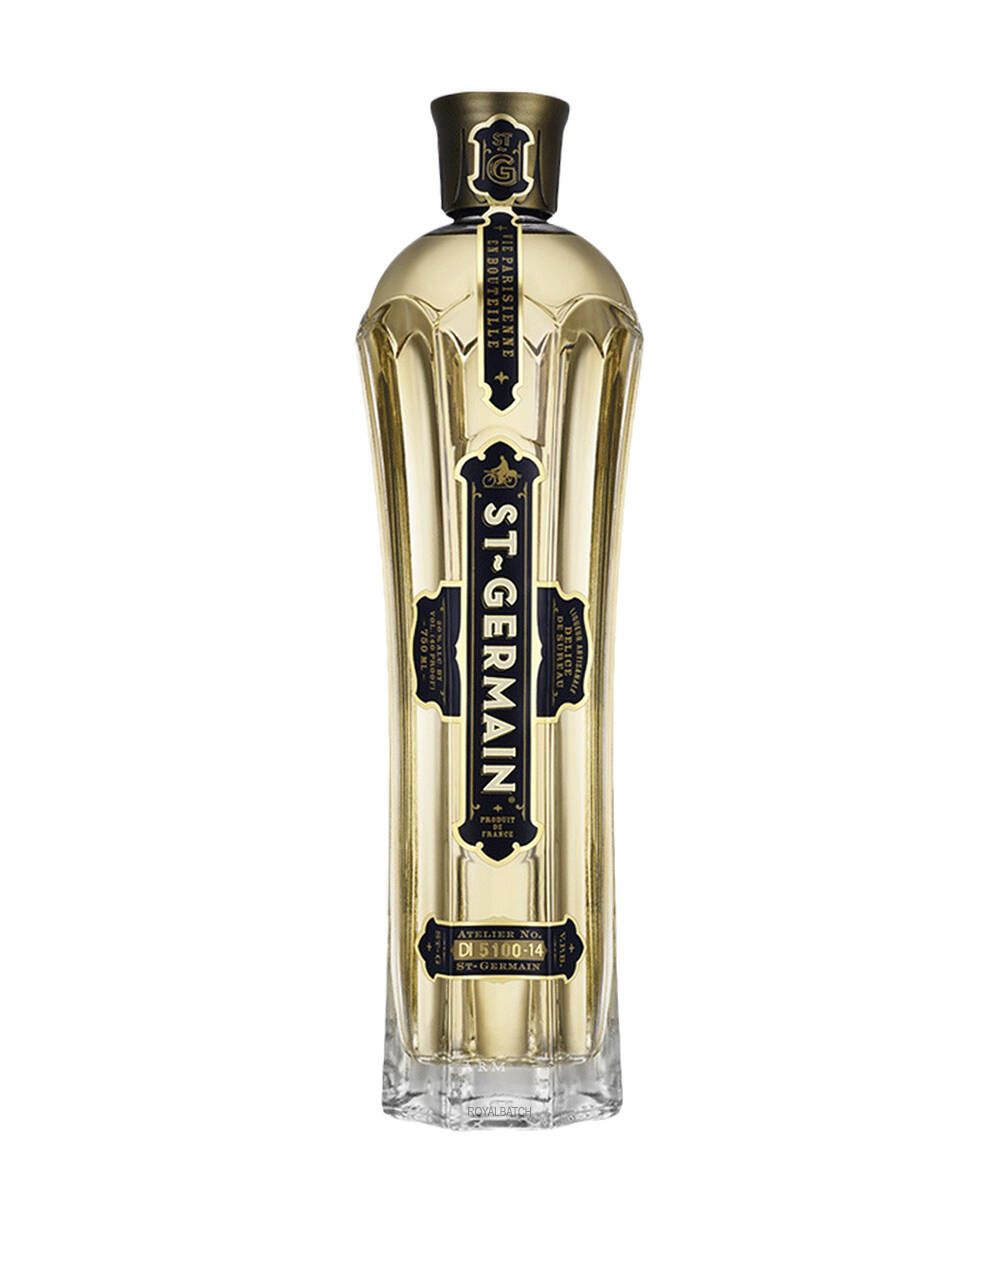 St. Germain Elderflower Liqueur 50ml